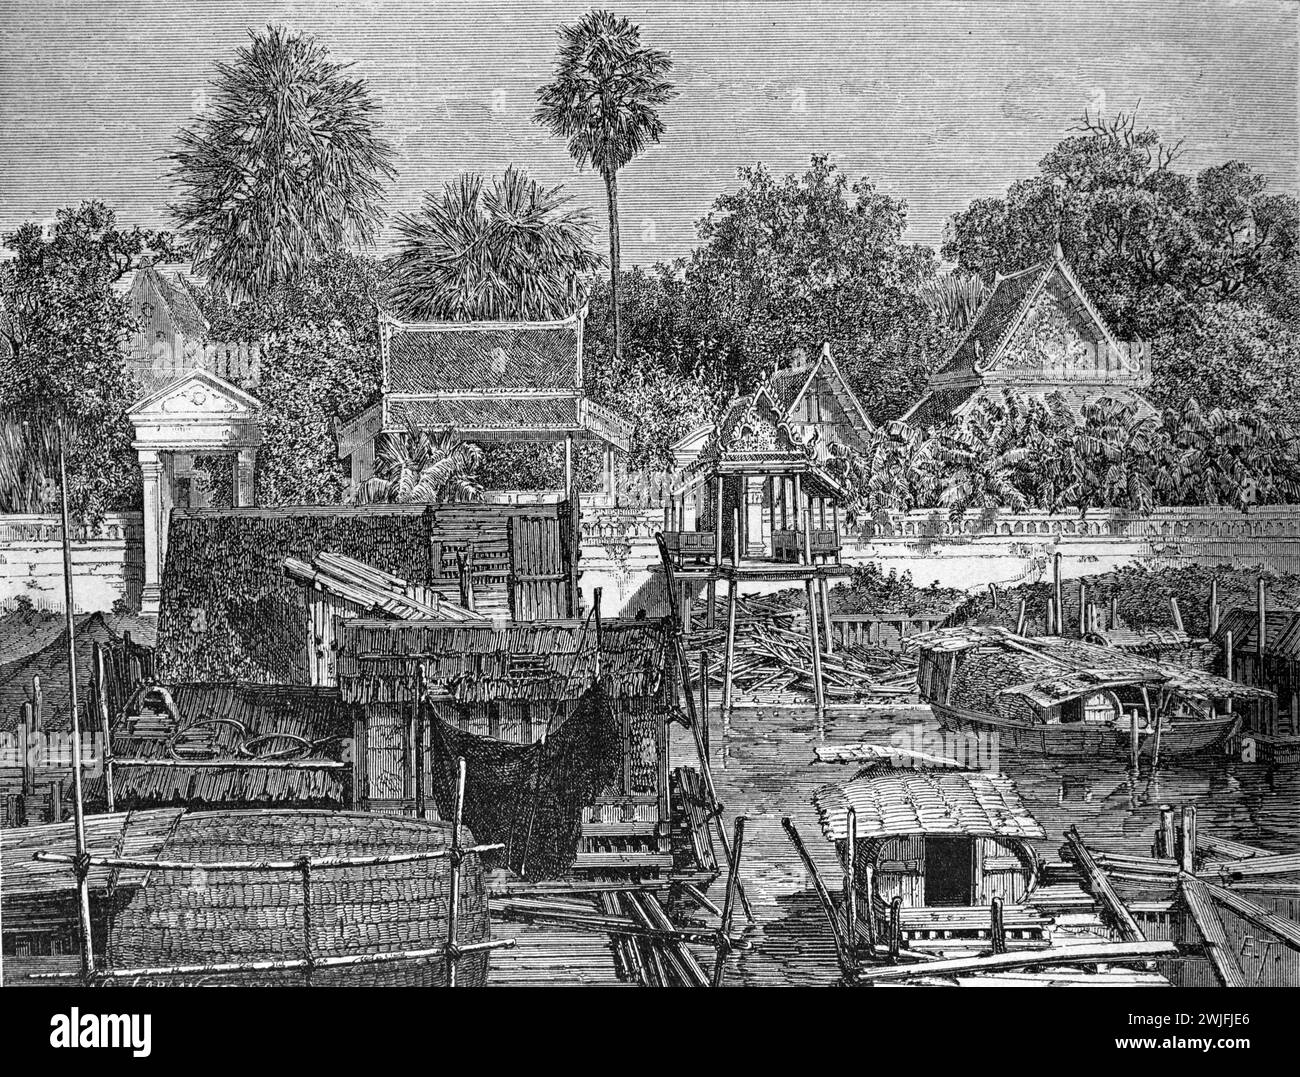 Holzboote, geschnittene Baumstämme, schwimmendes Dorf und Thai-Tempel entlang des Ayutthaya-Kanals Thailand. Vintage oder historische Gravur oder Illustration 1863 Stockfoto